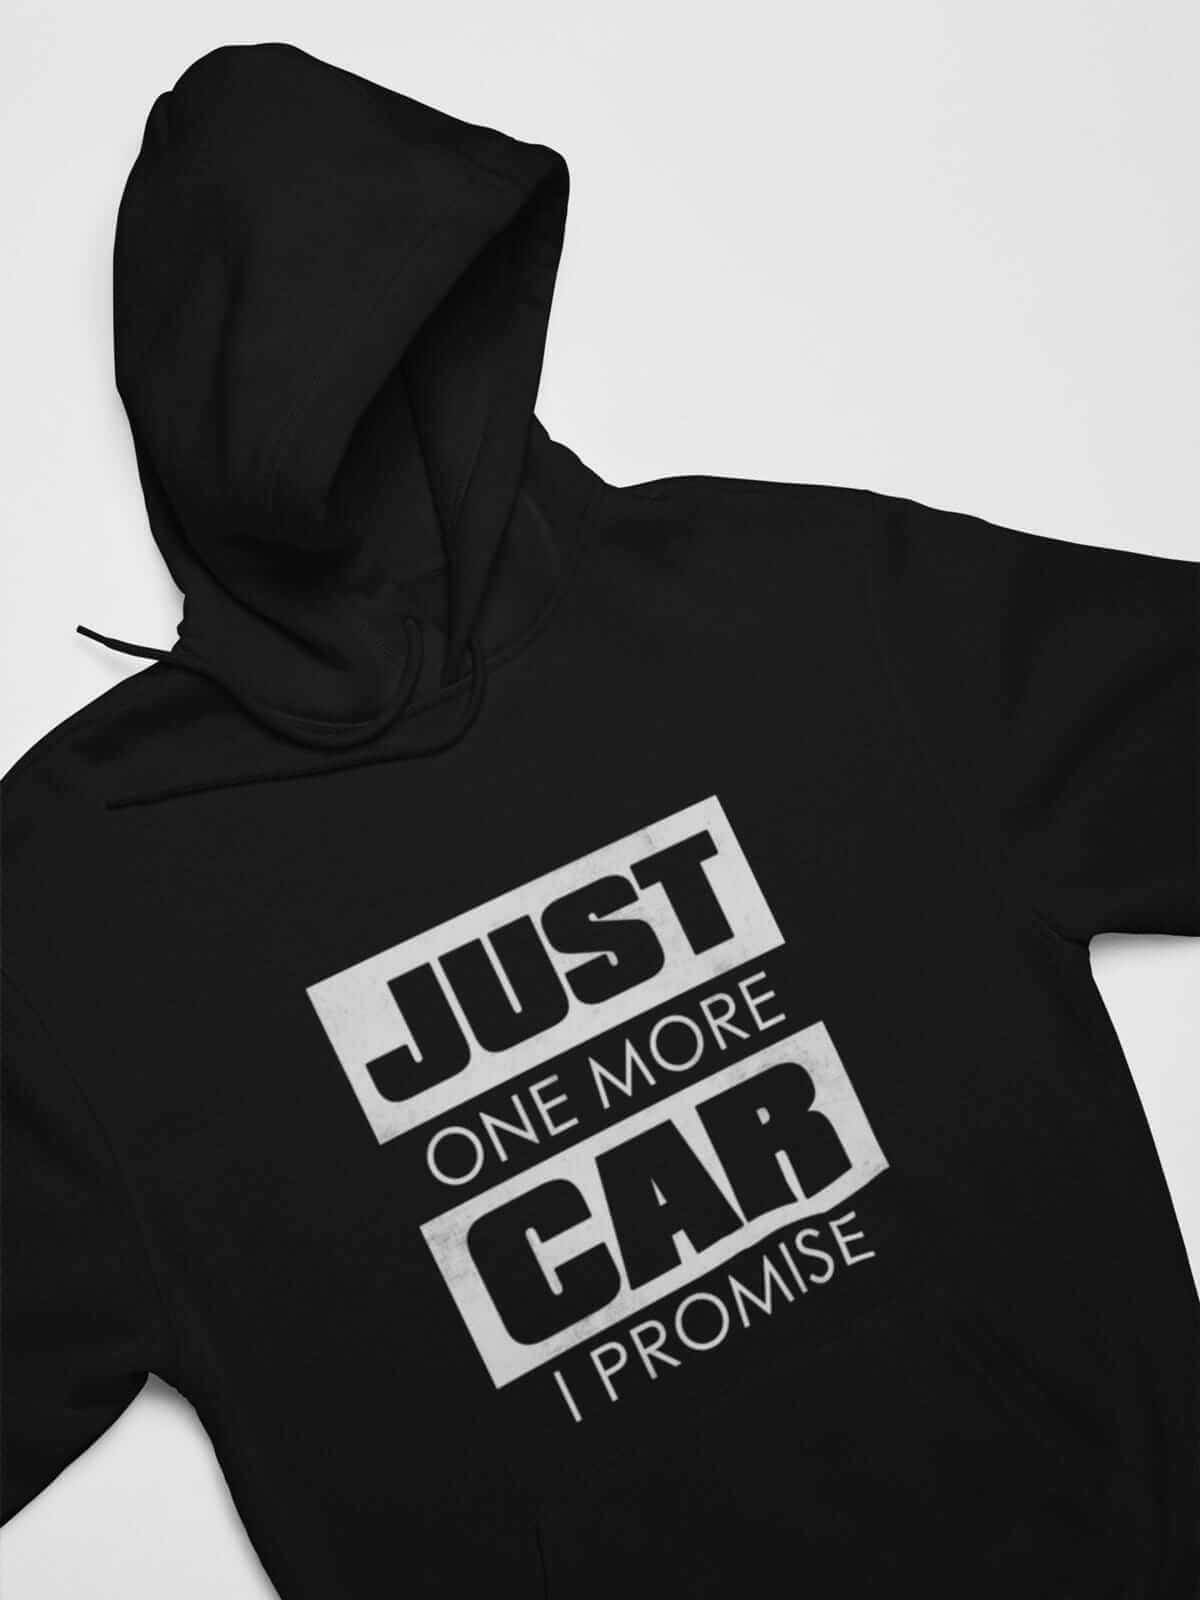 just-one-more-car-i-promise-car-hoodie-in-black_-car-fans_-car-lovers-gift-hoodie_-car-guys-hooded-sweatshirt_-car-enthusiast.jpg